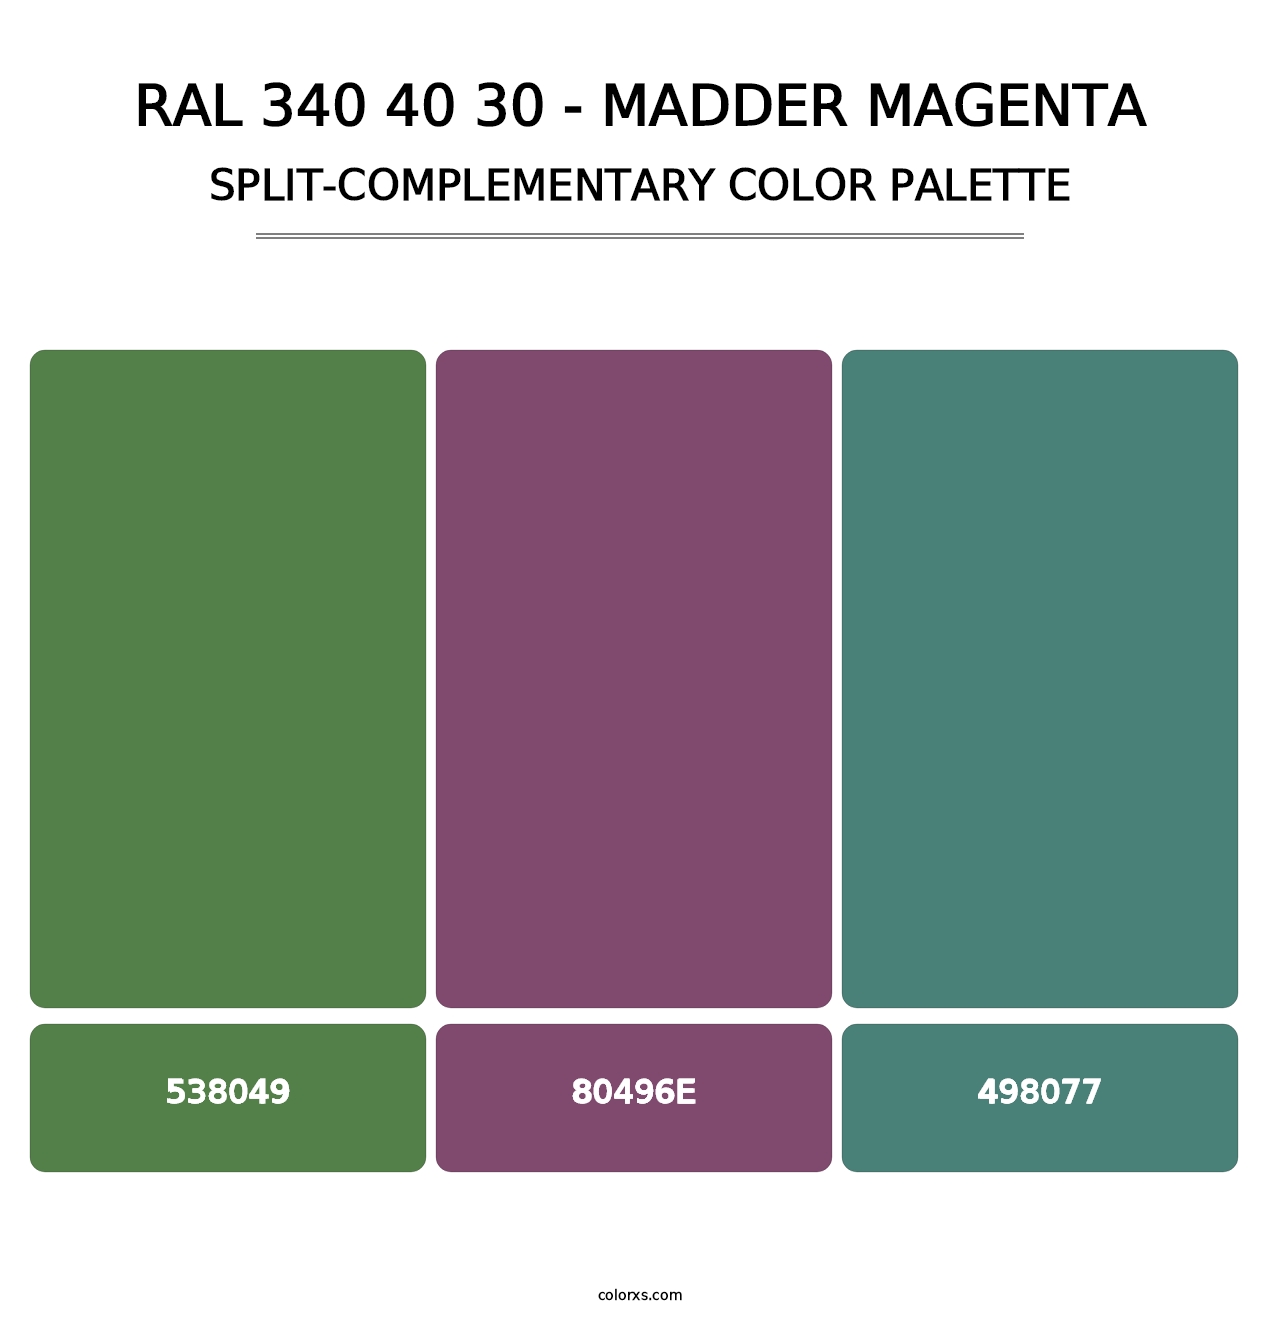 RAL 340 40 30 - Madder Magenta - Split-Complementary Color Palette